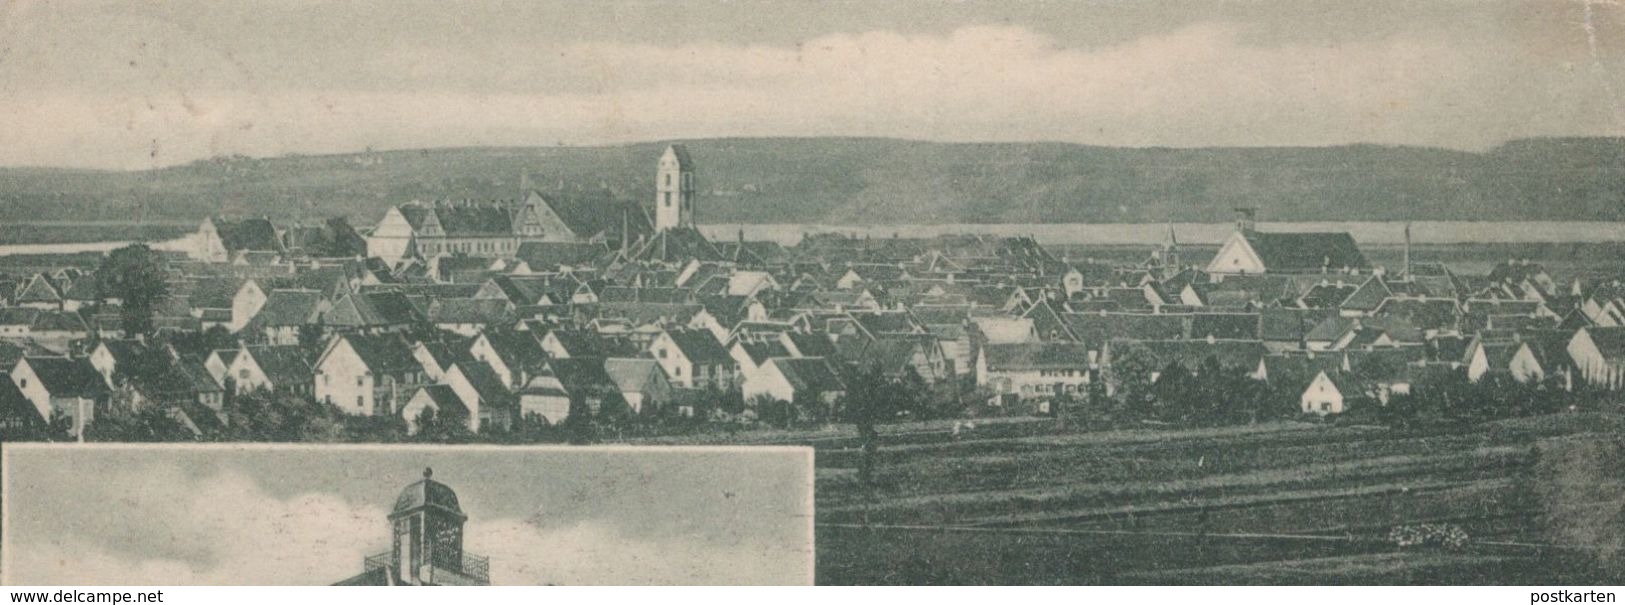 ALTE POSTKARTE GRUSS VON BUCHAU AM FEDERSEE ELEKTRIZITÄTSWERK 1906 Ansichtskarte AK Postcard Cpa - Bad Buchau